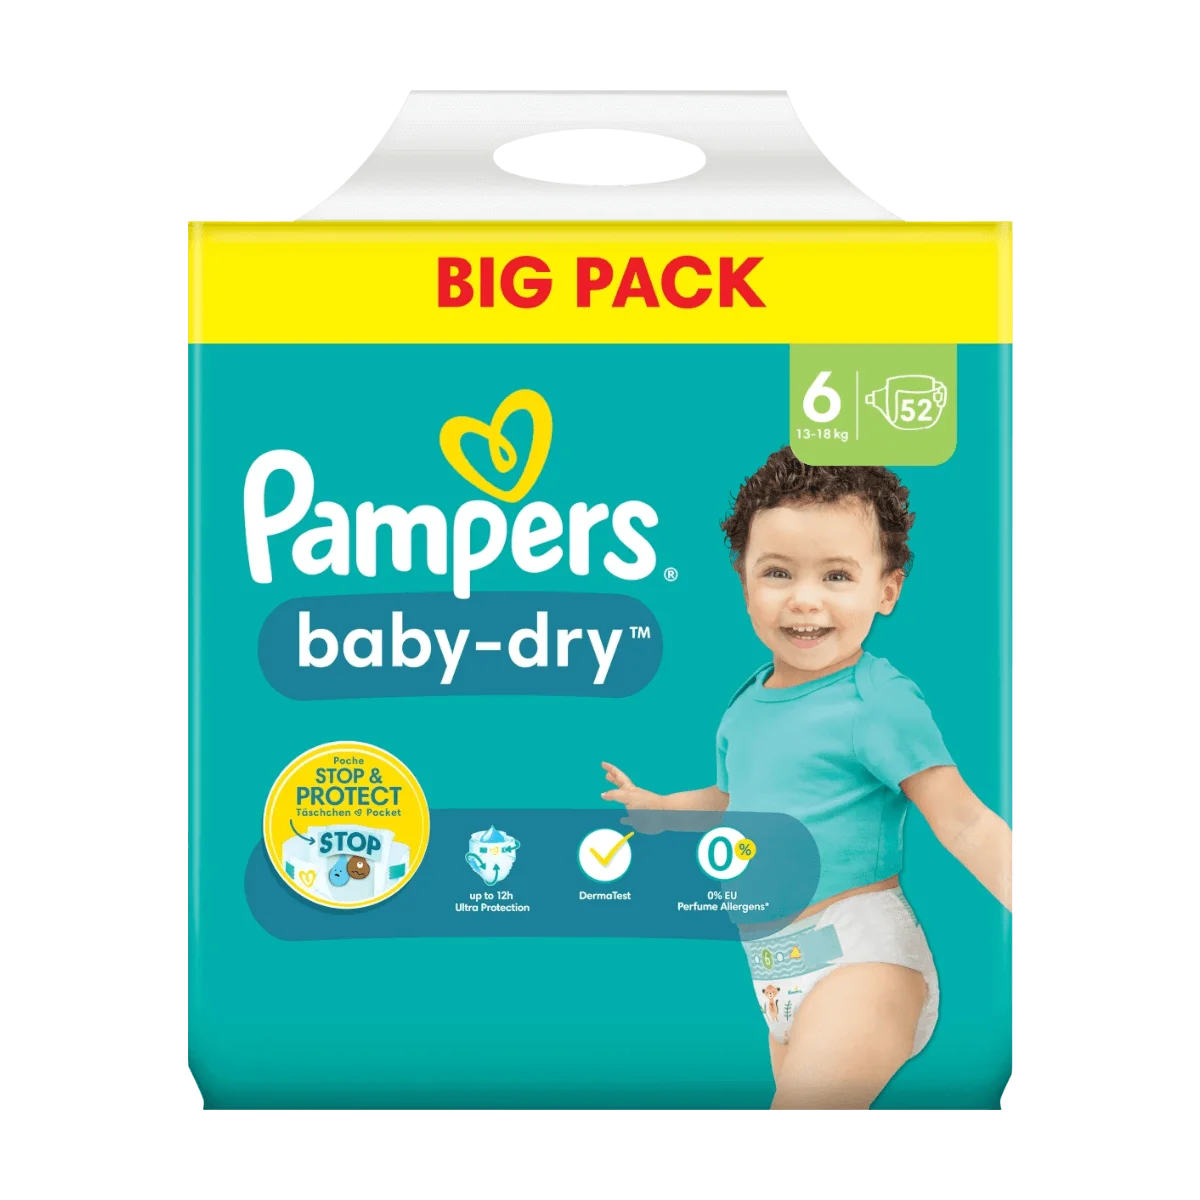 Pampers Baby Dry Big Pack Größe 6 XL 13-18kg, 52 Stk